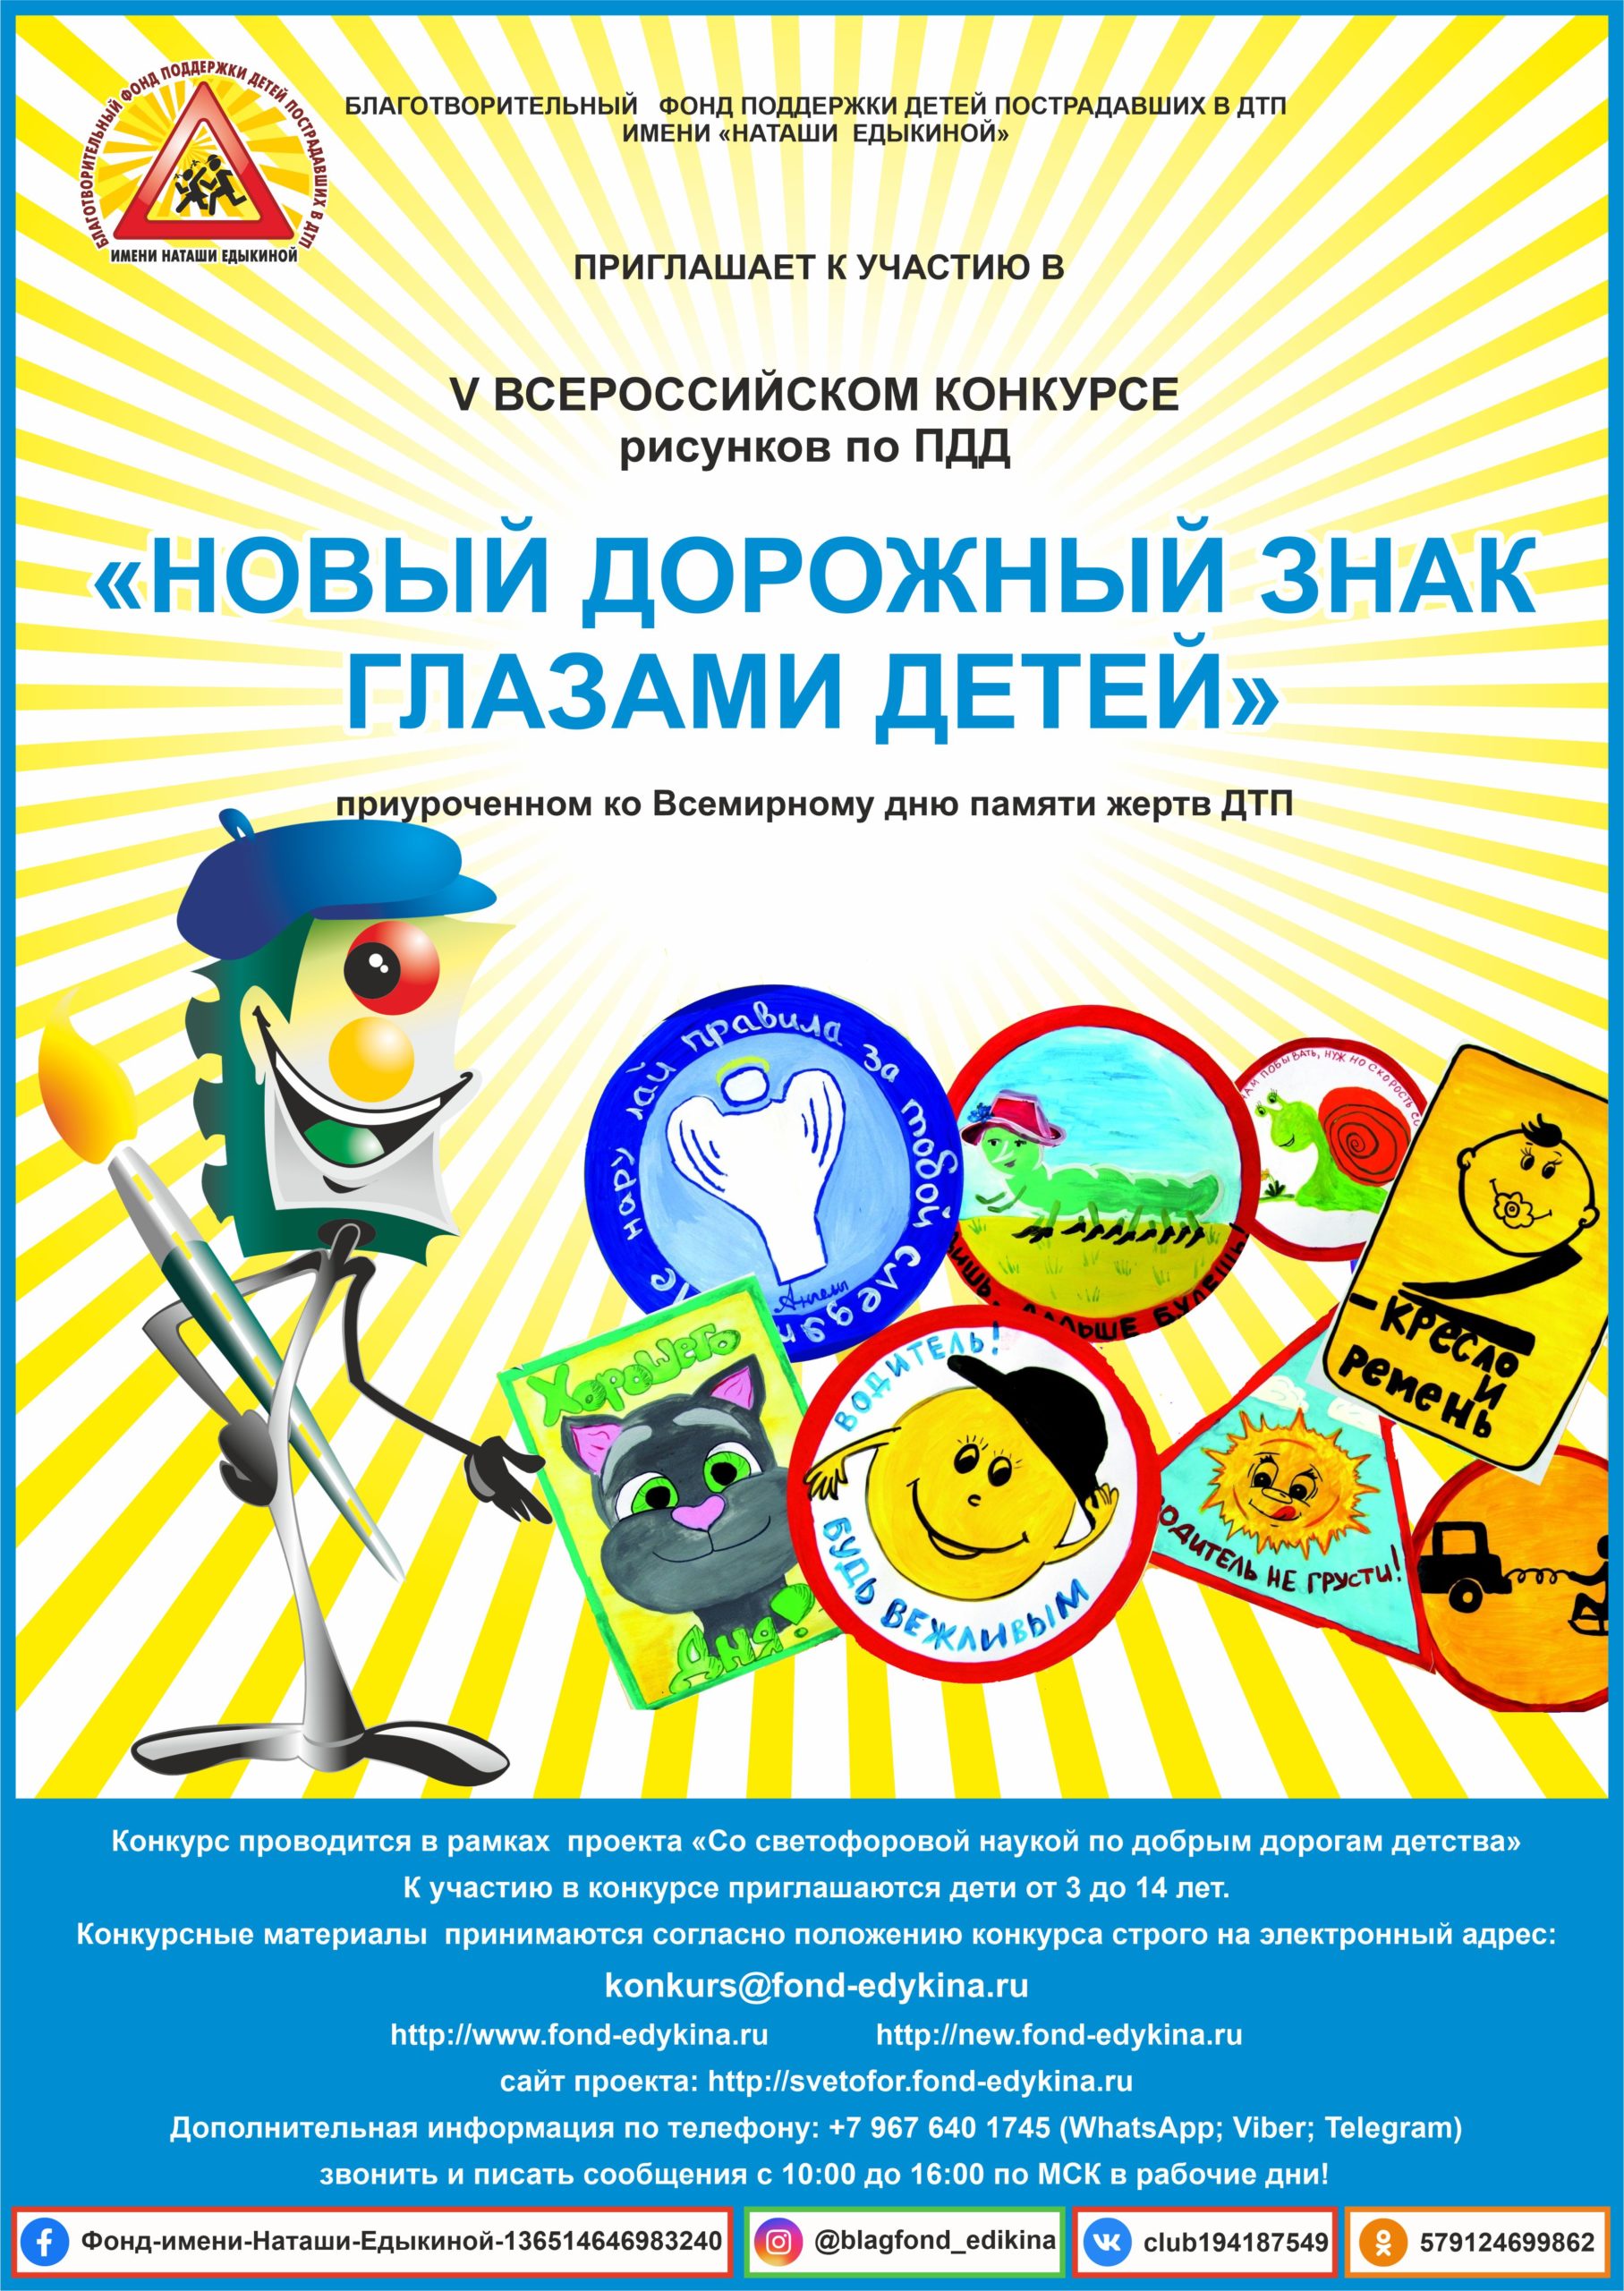 Юных нижегородцев приглашают принять участие В V Всероссийском конкурсе рисунков по ПДД “Новый дорожный знак глазами детей”